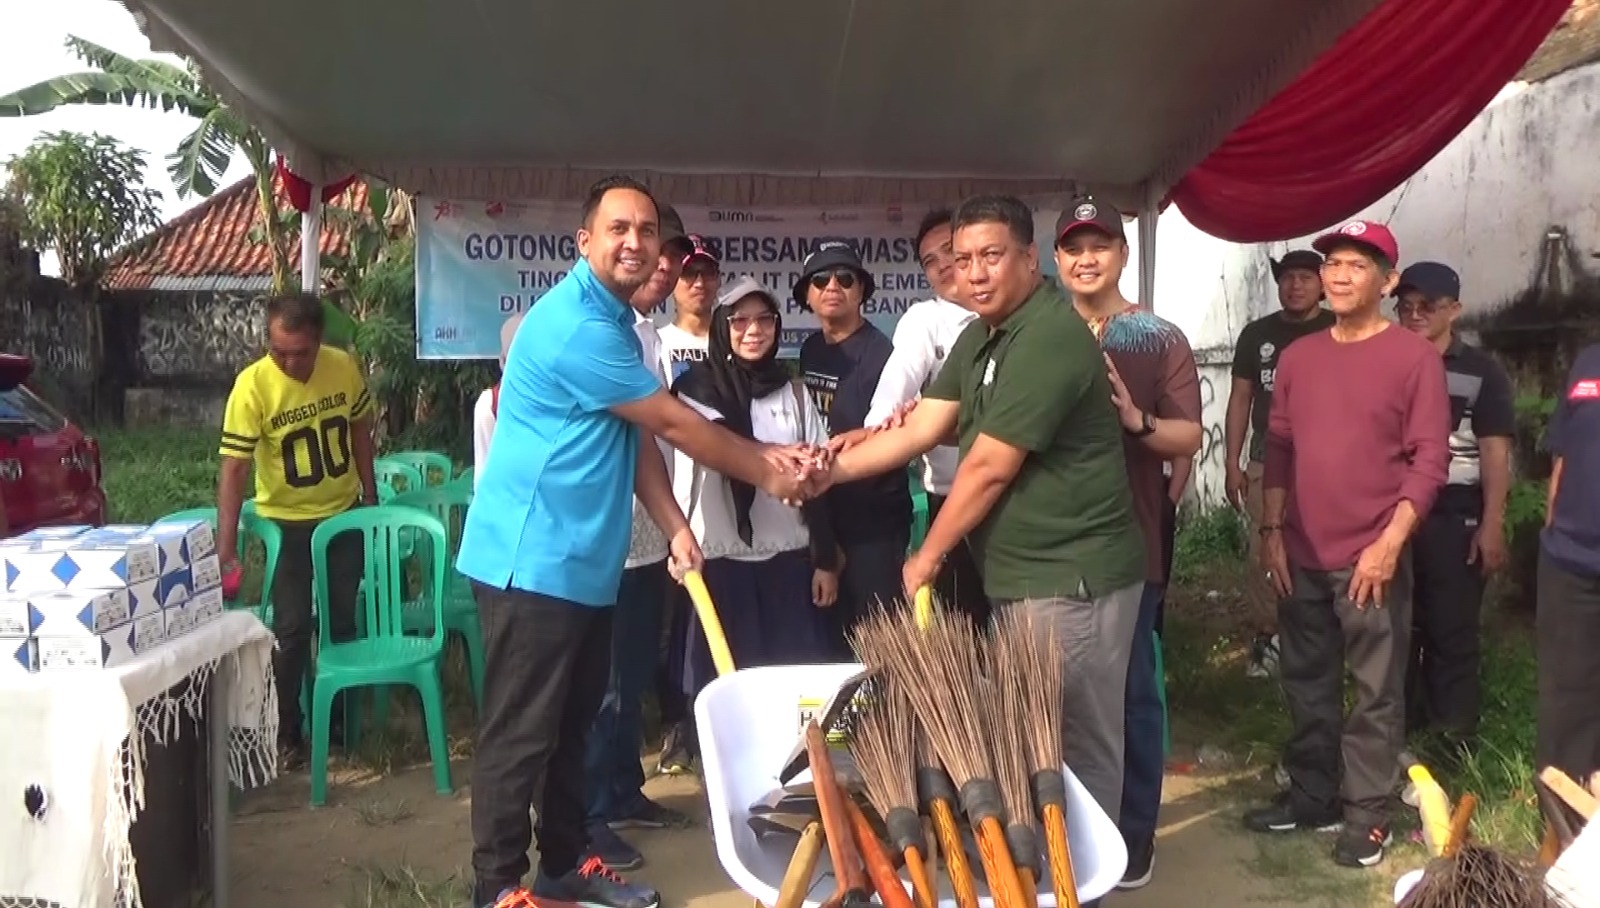 Anggota DPRD Kota Palembang M Hidayat Bersama Warga Gotong Royong Tingkat Kecamatan